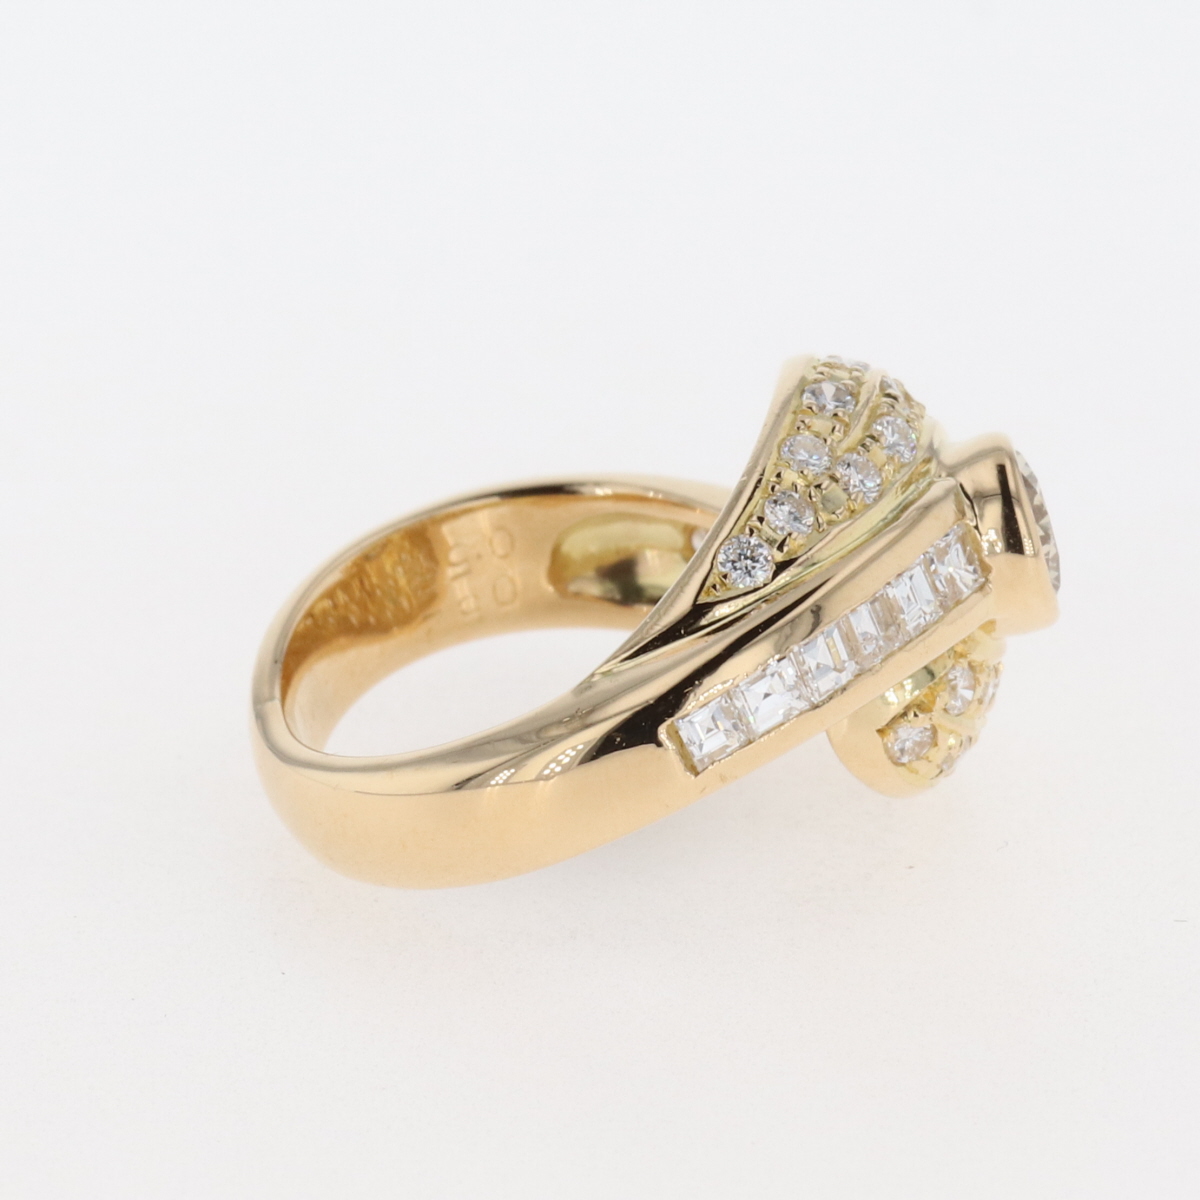 ランク ダイヤモンド デザインリング K18 イエローゴールド 指輪 メレダイヤ リング 約5.5号 YG ダイヤモンド レディース ：バイセル 店 しがござい